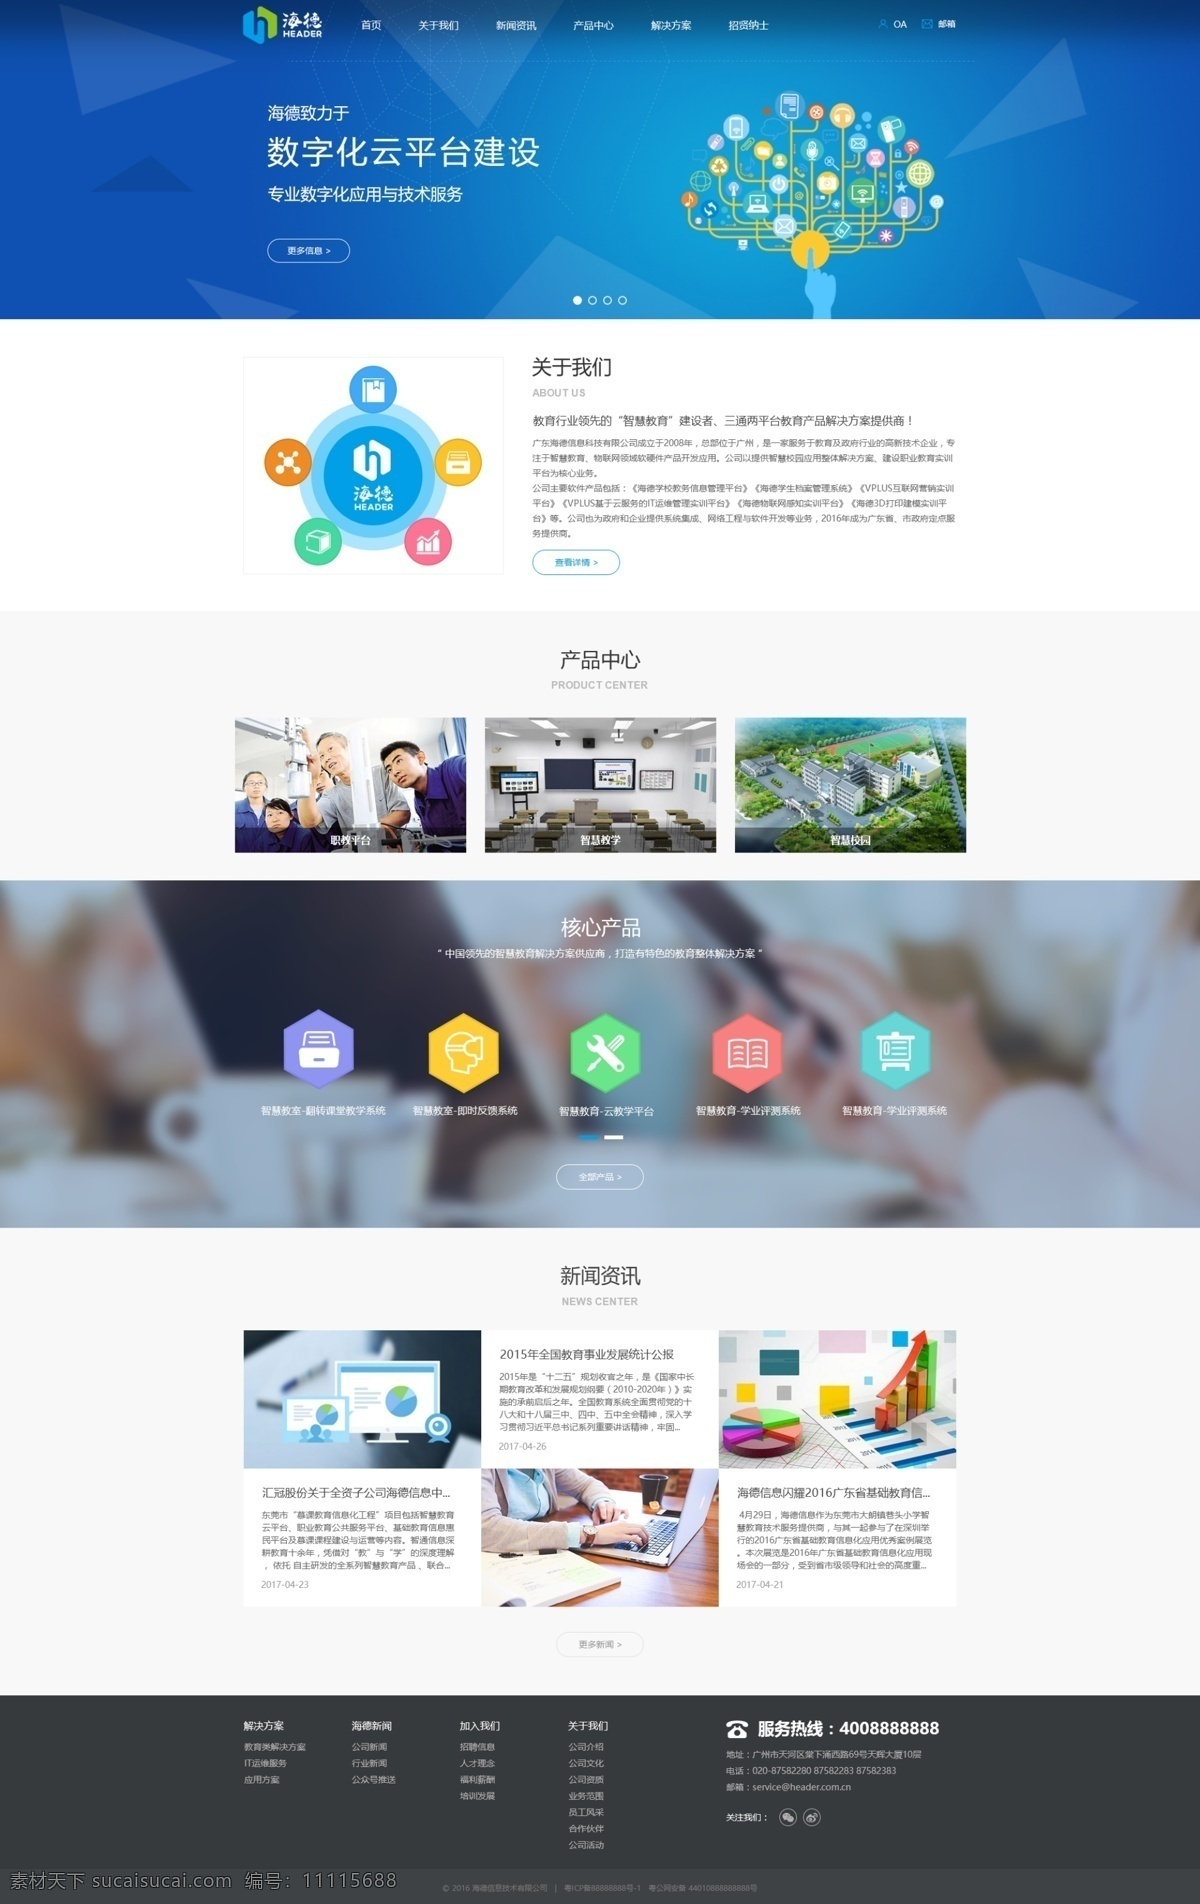 企业官网首页 首页 ui 企业网站 科技 教育 web 界面设计 中文模板